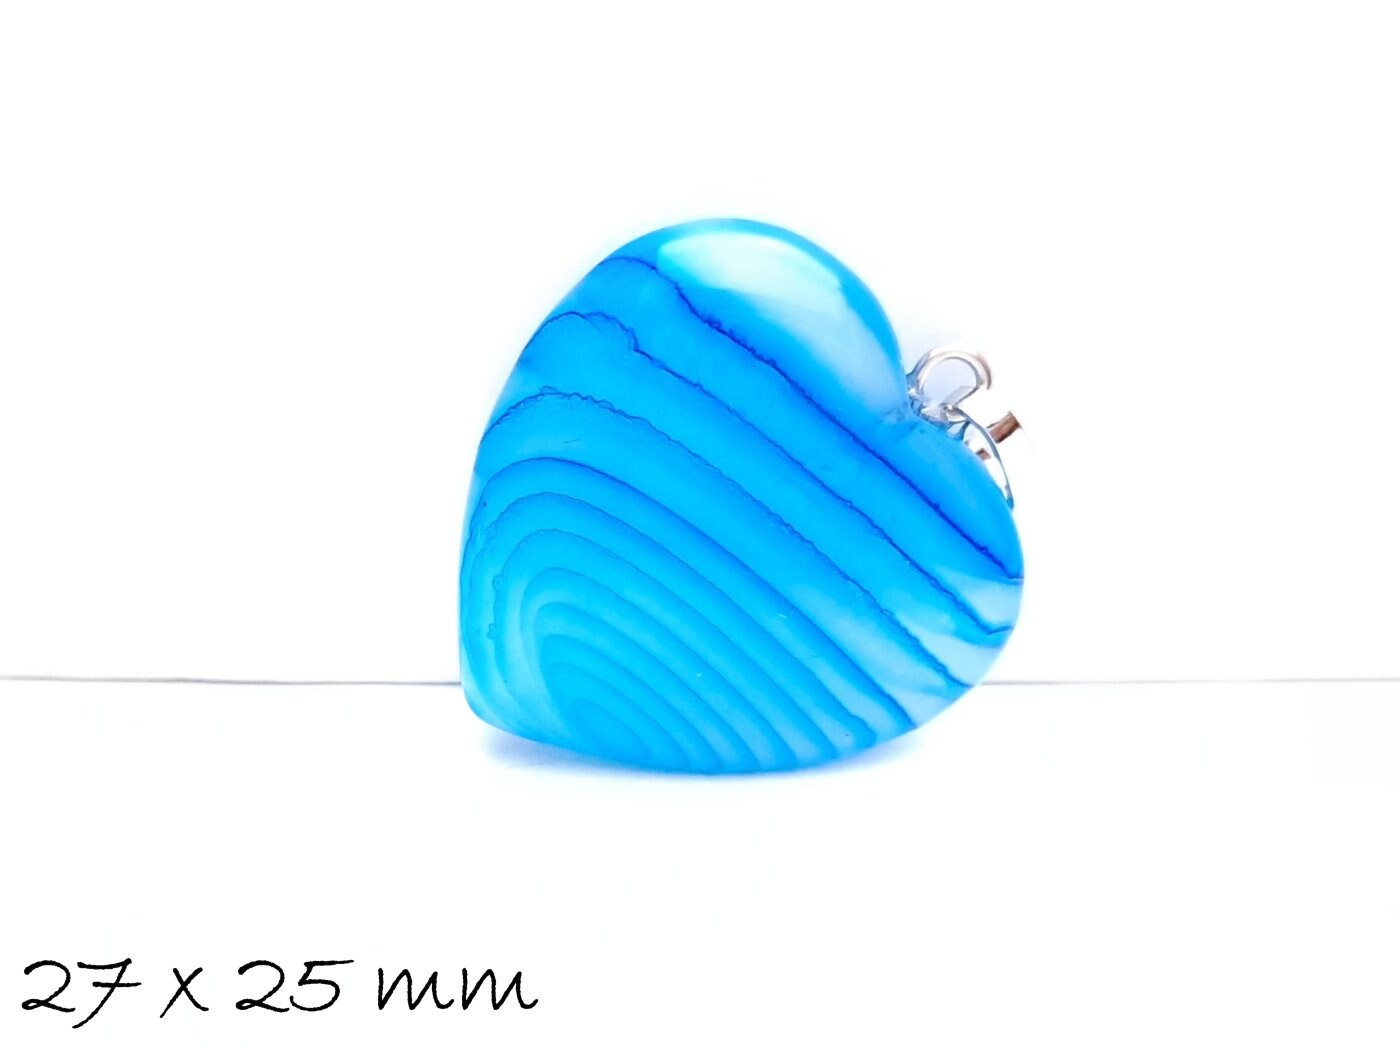 1 Stück Herz Anhänger Achat 27 x 25 mm, blau